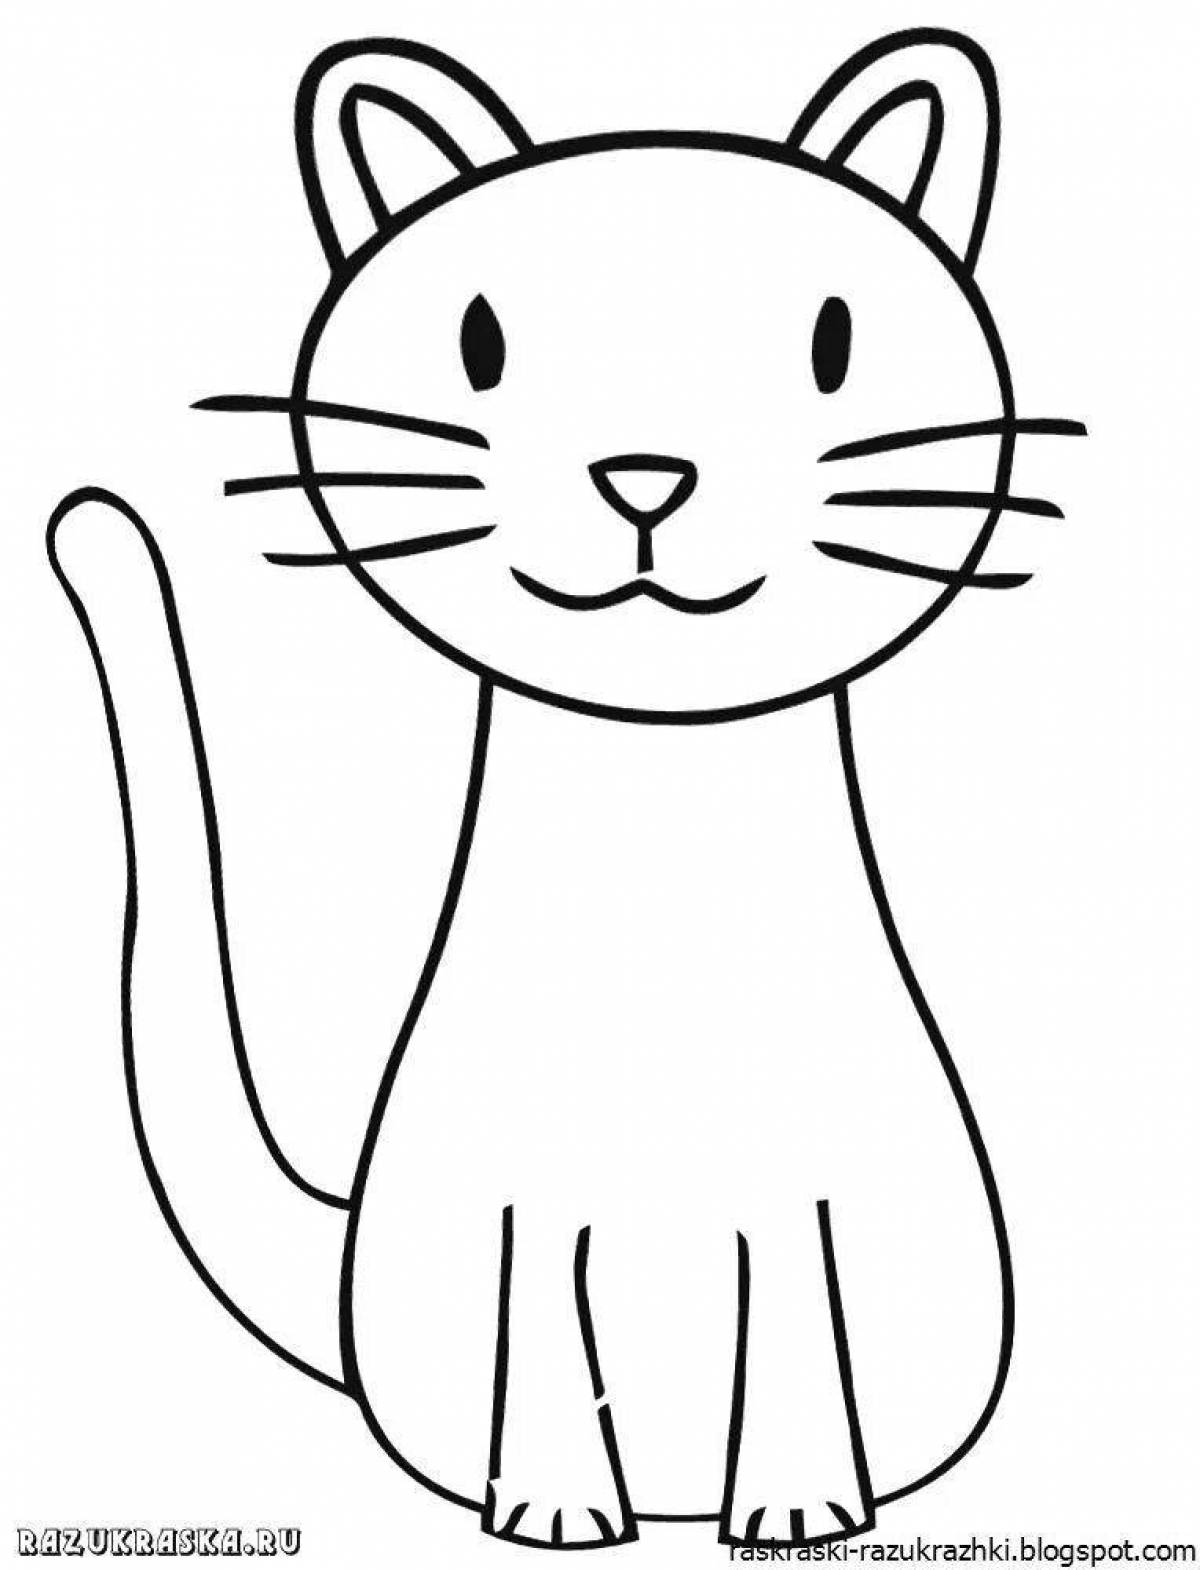 Красочная раскраска котенка для детей 3-4 лет